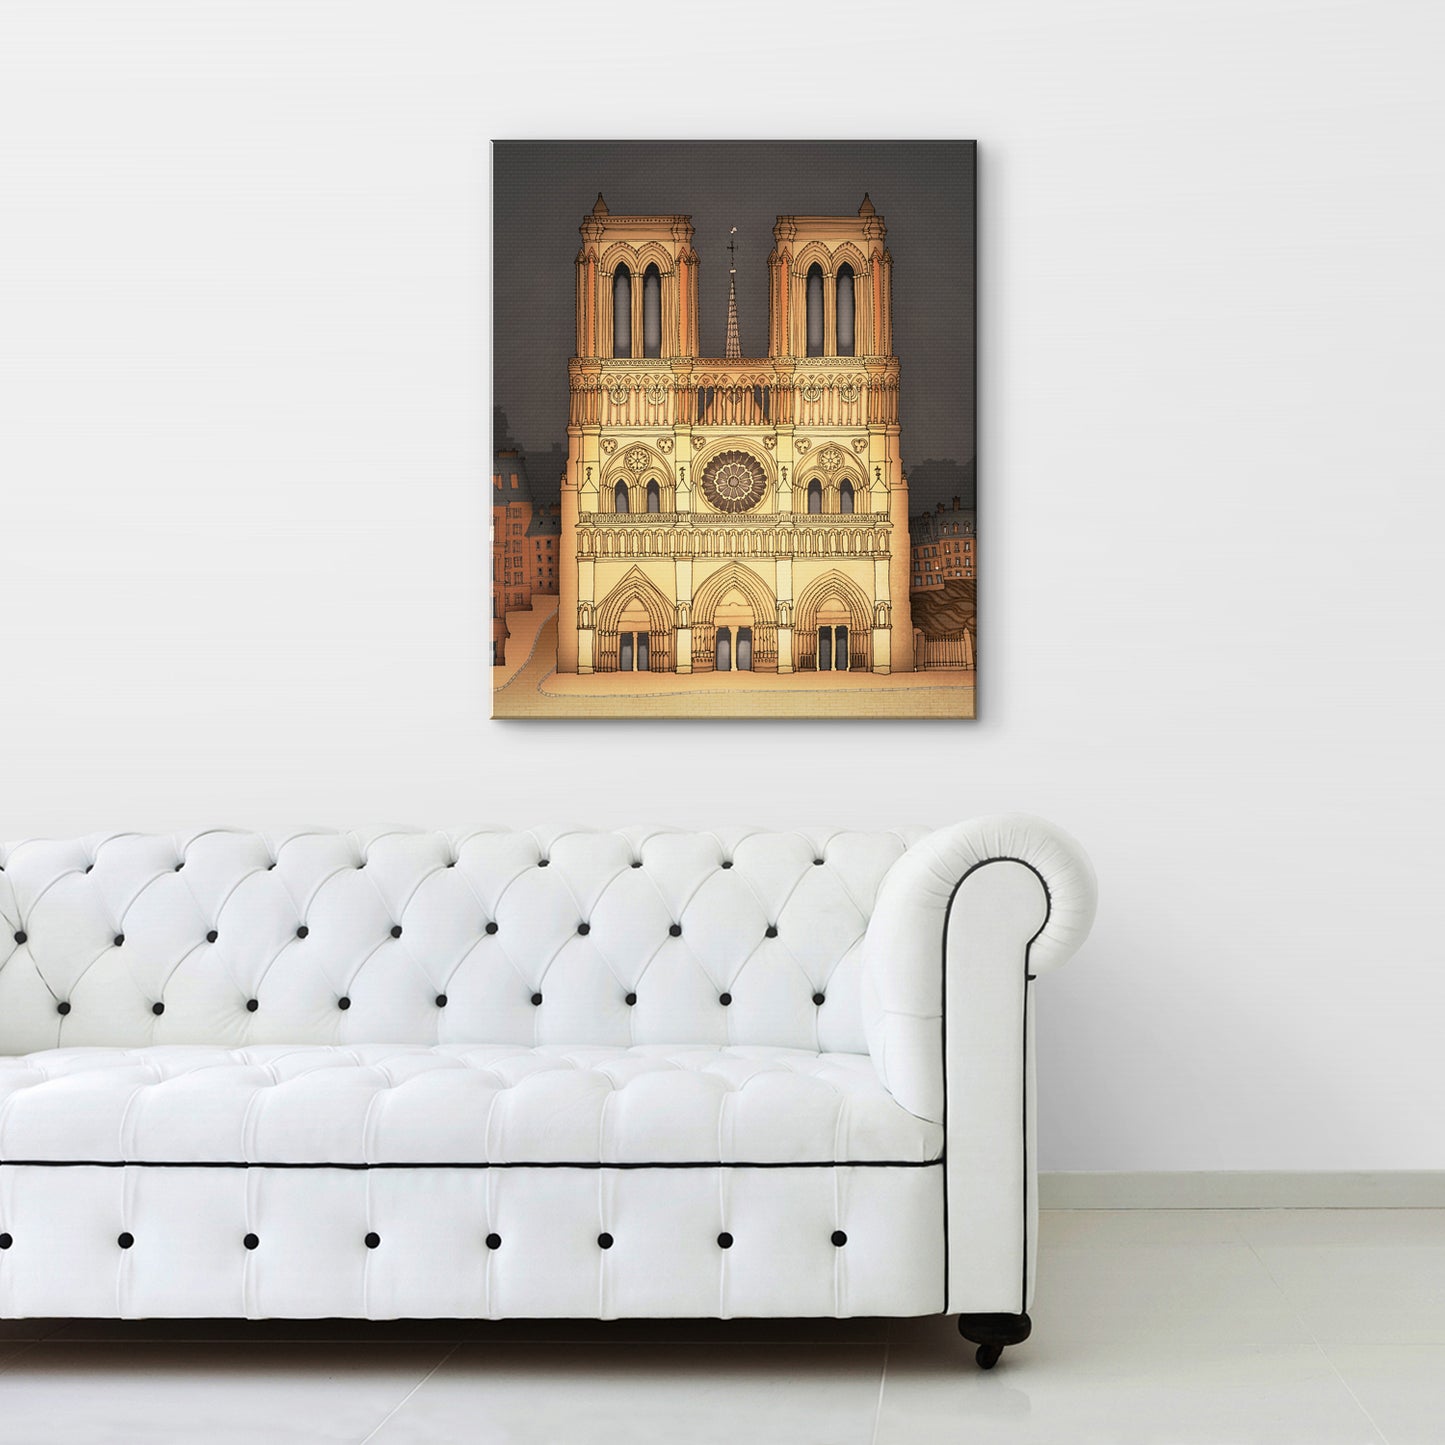 The Notre Dame in Paris (vertical) - Canvas Art Print